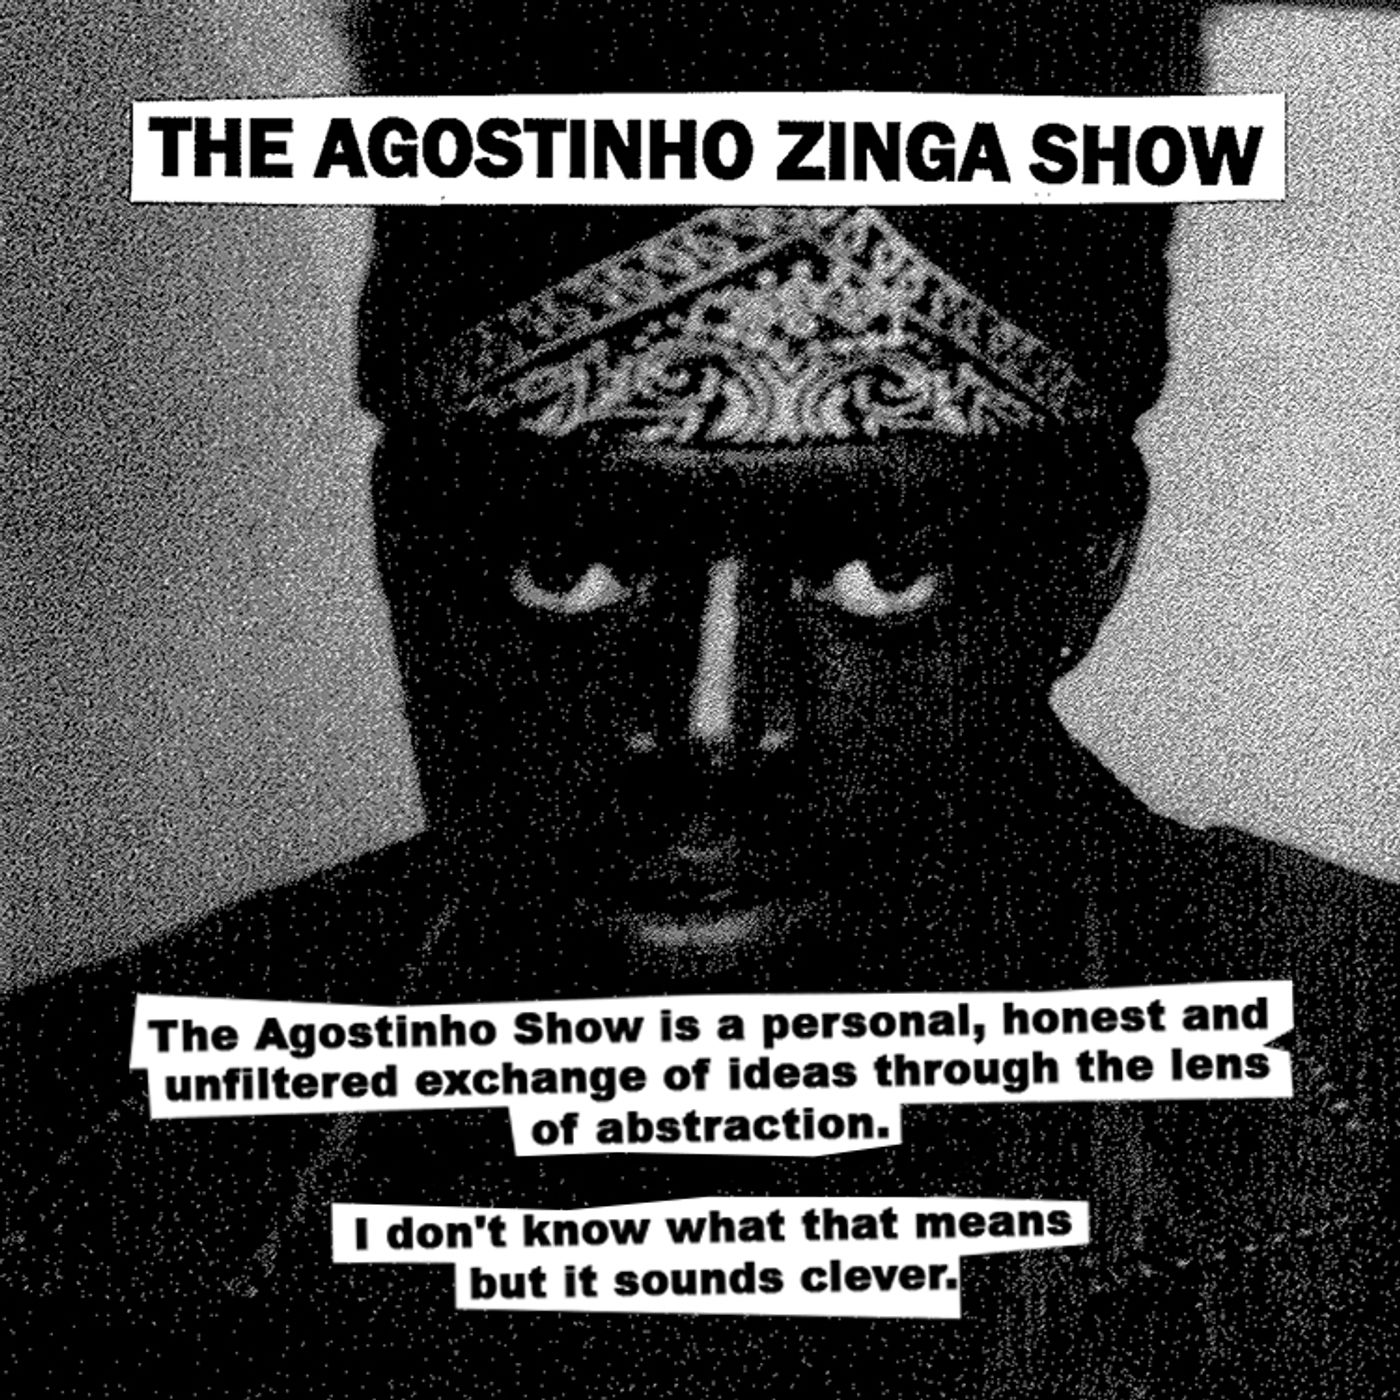 The Agostinho Zinga Show